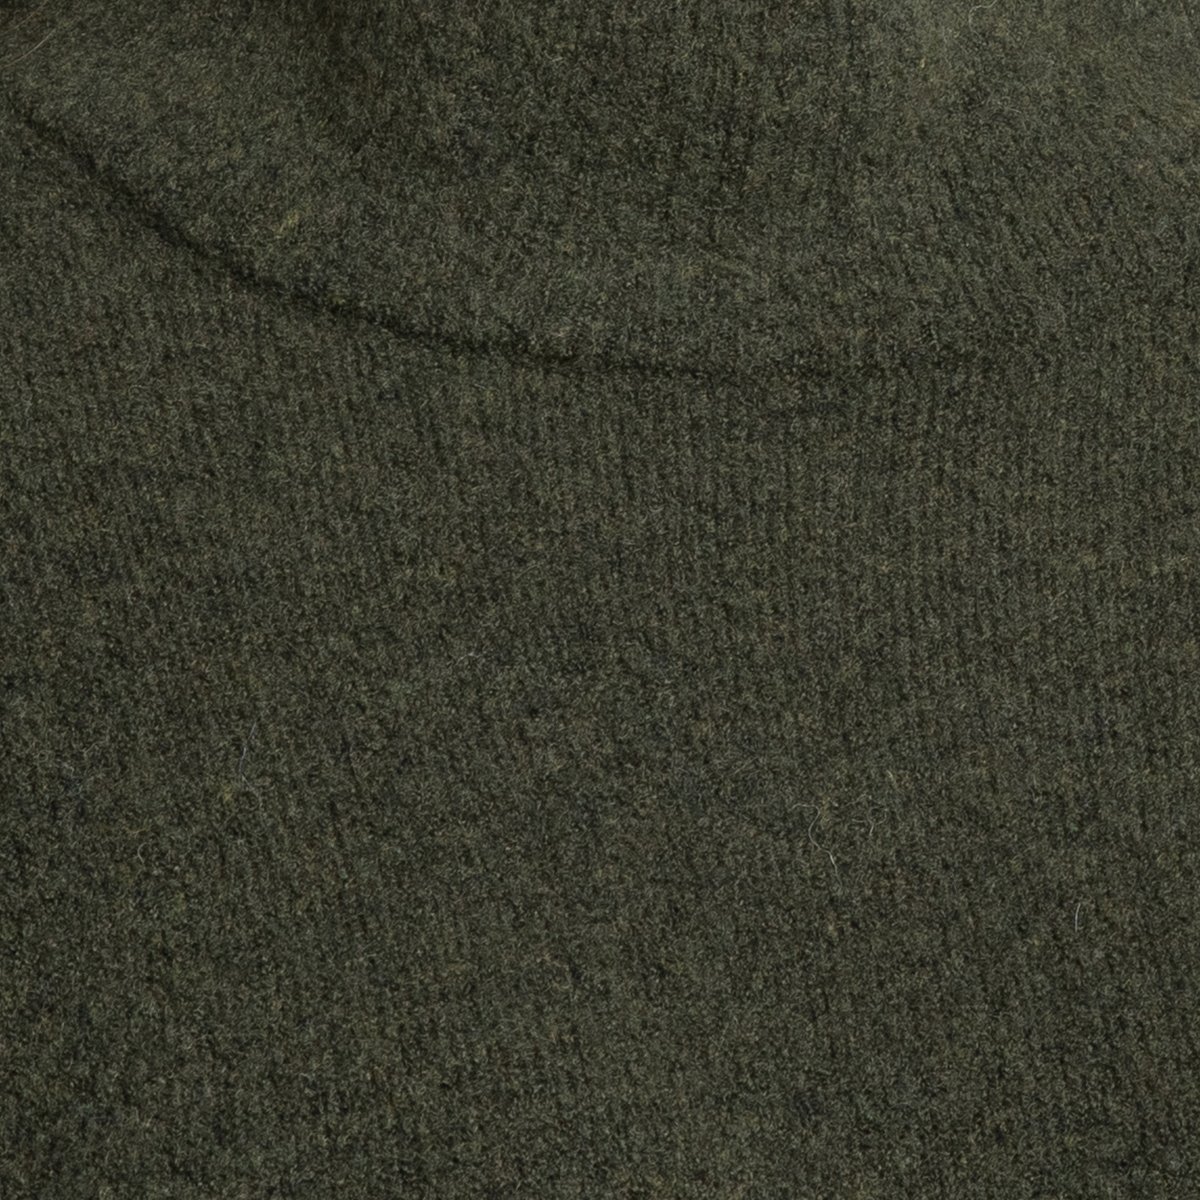 Платье-пуловер La Redoute Длинное с длинными рукавами DAMSVILLE XS/S зеленый, размер XS/S Длинное с длинными рукавами DAMSVILLE XS/S зеленый - фото 4